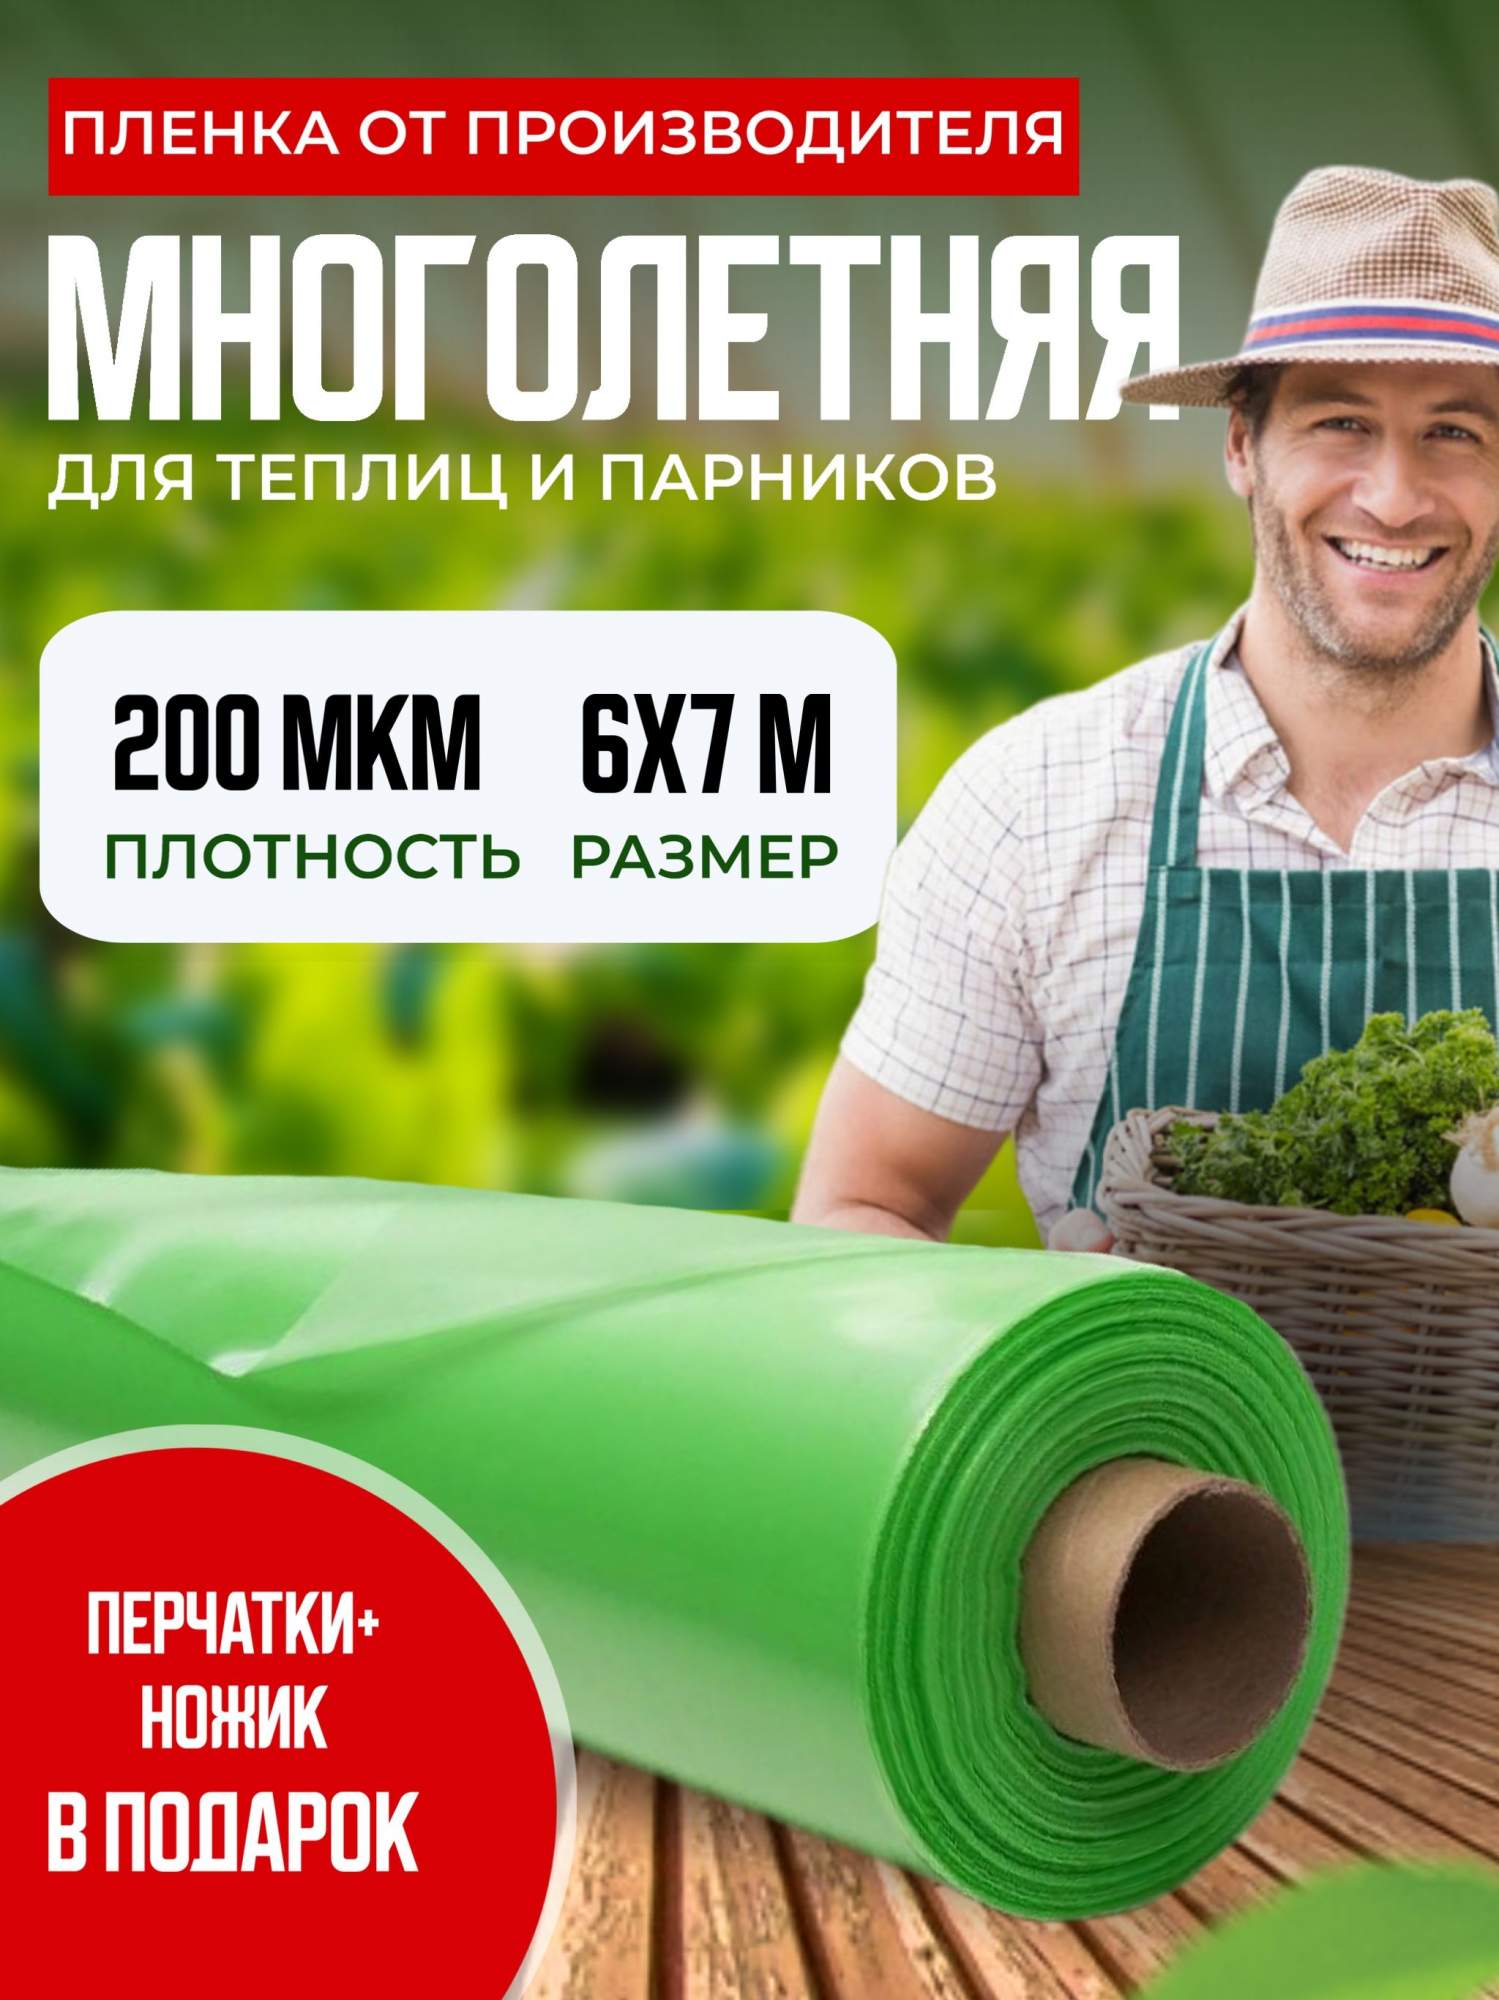 Пленка для теплиц многолетняя, 200 мкм, 6х7м, зеленый арт.149259396 - купить в Москве, цены на Мегамаркет | 600013059960